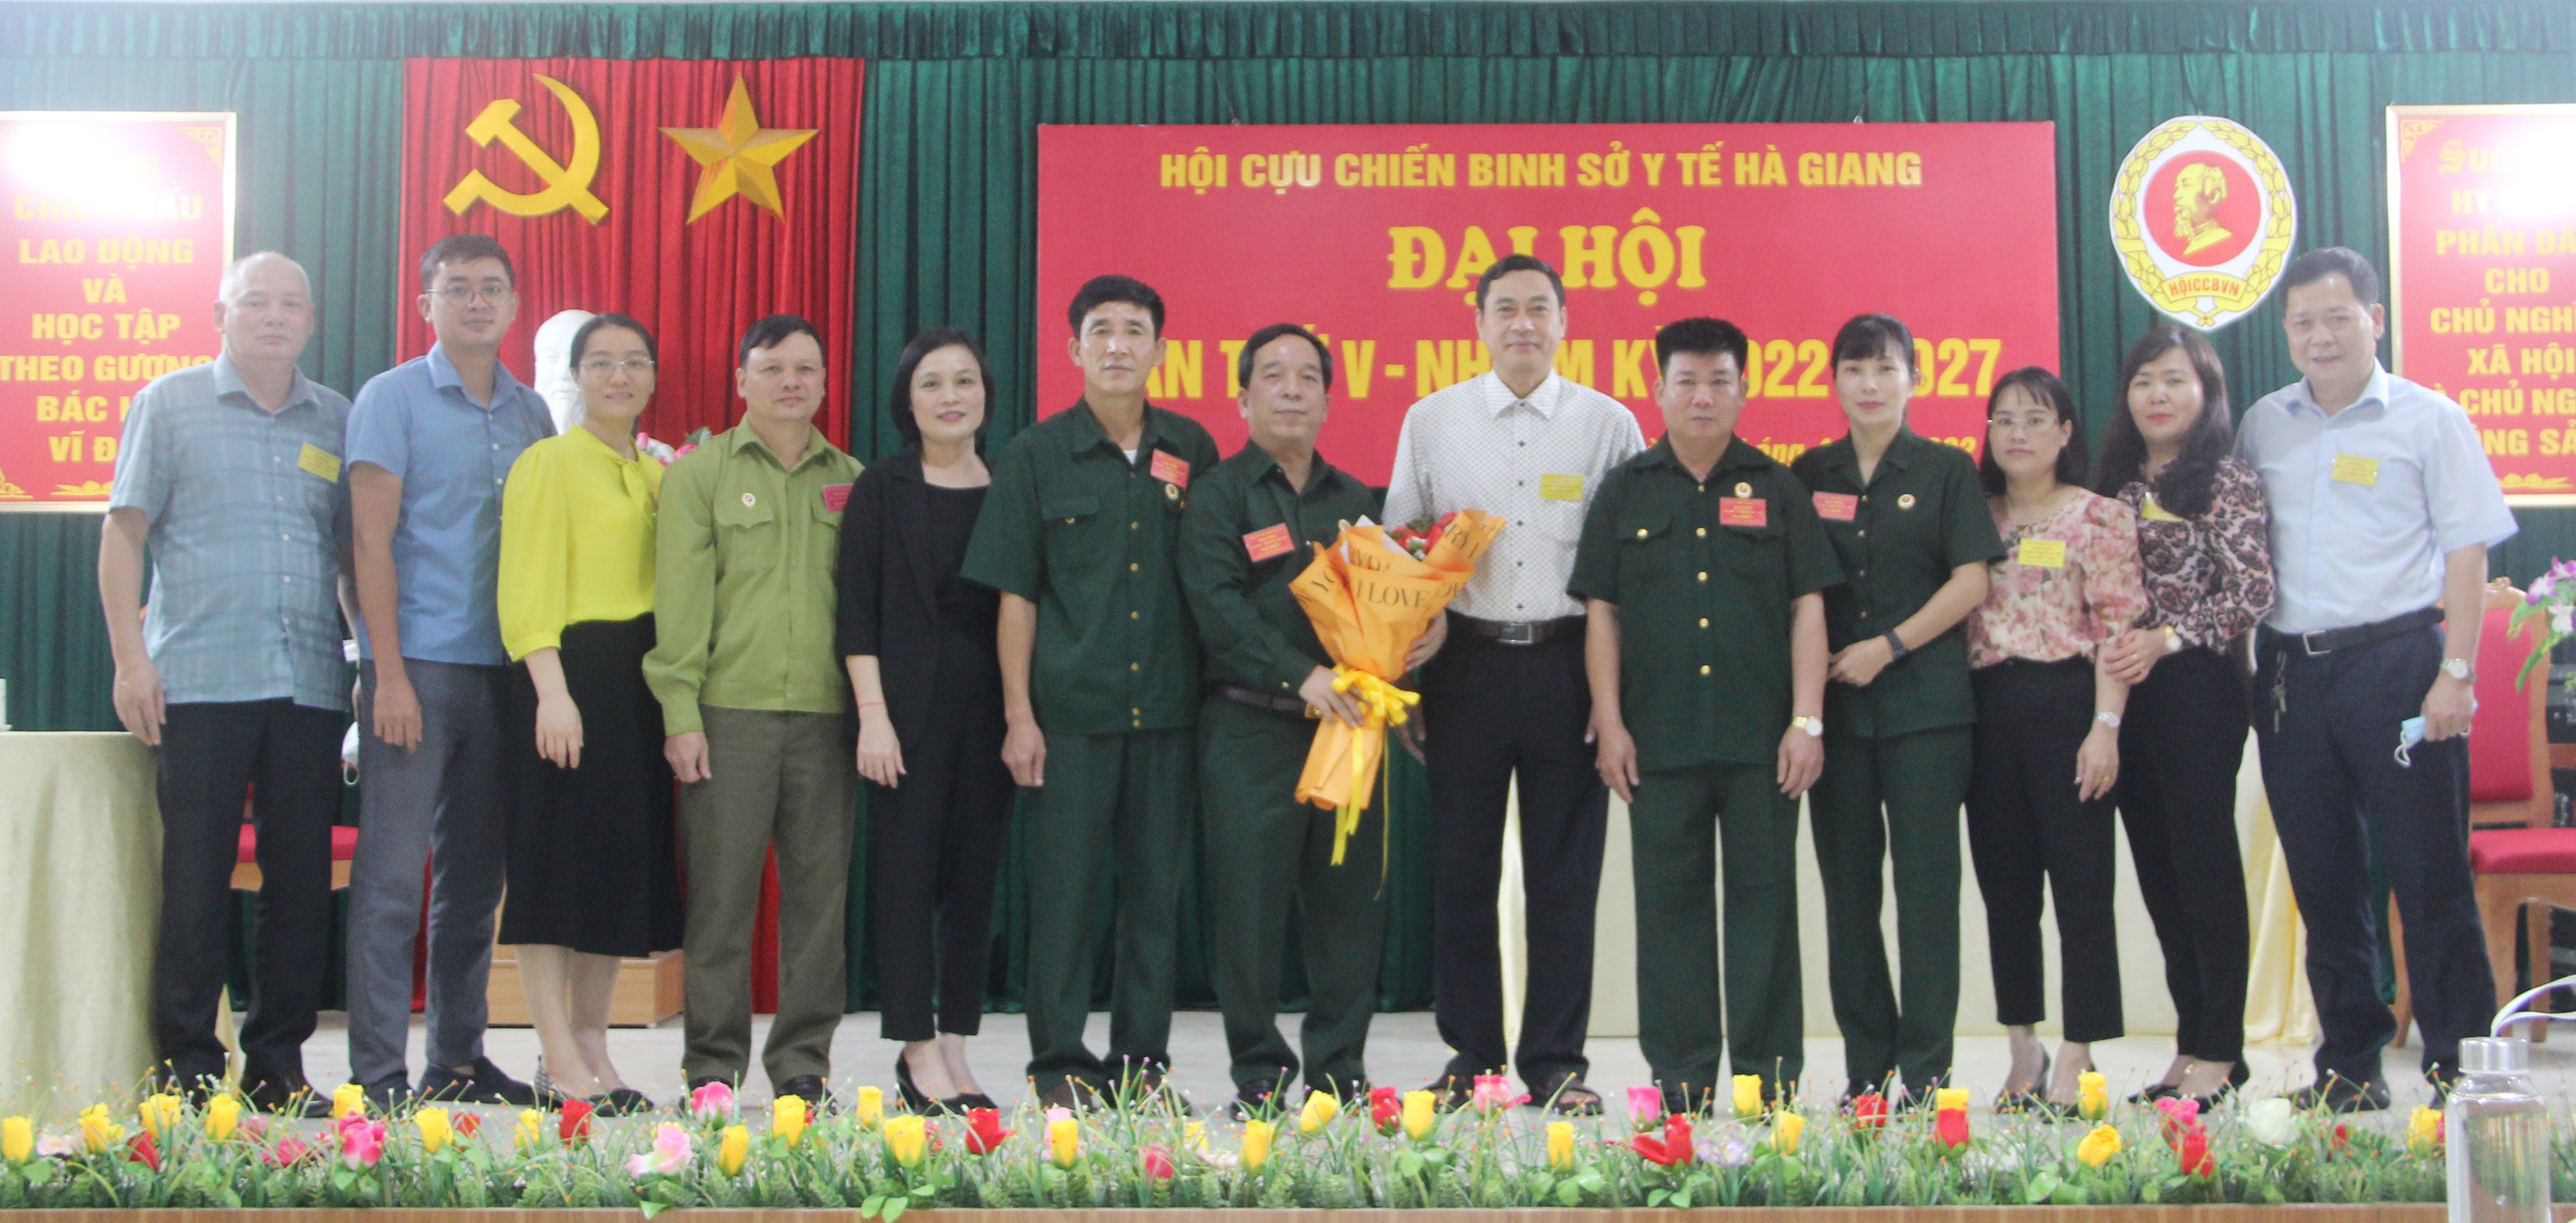 Đồng chí Nguyễn Văn Giao- Bí thư Đảng ủy Sở Y tế- Quyền Giám đốc Sở Y tế  và các đại biểu tham dự Đại hội chụp ảnh lưu niệm